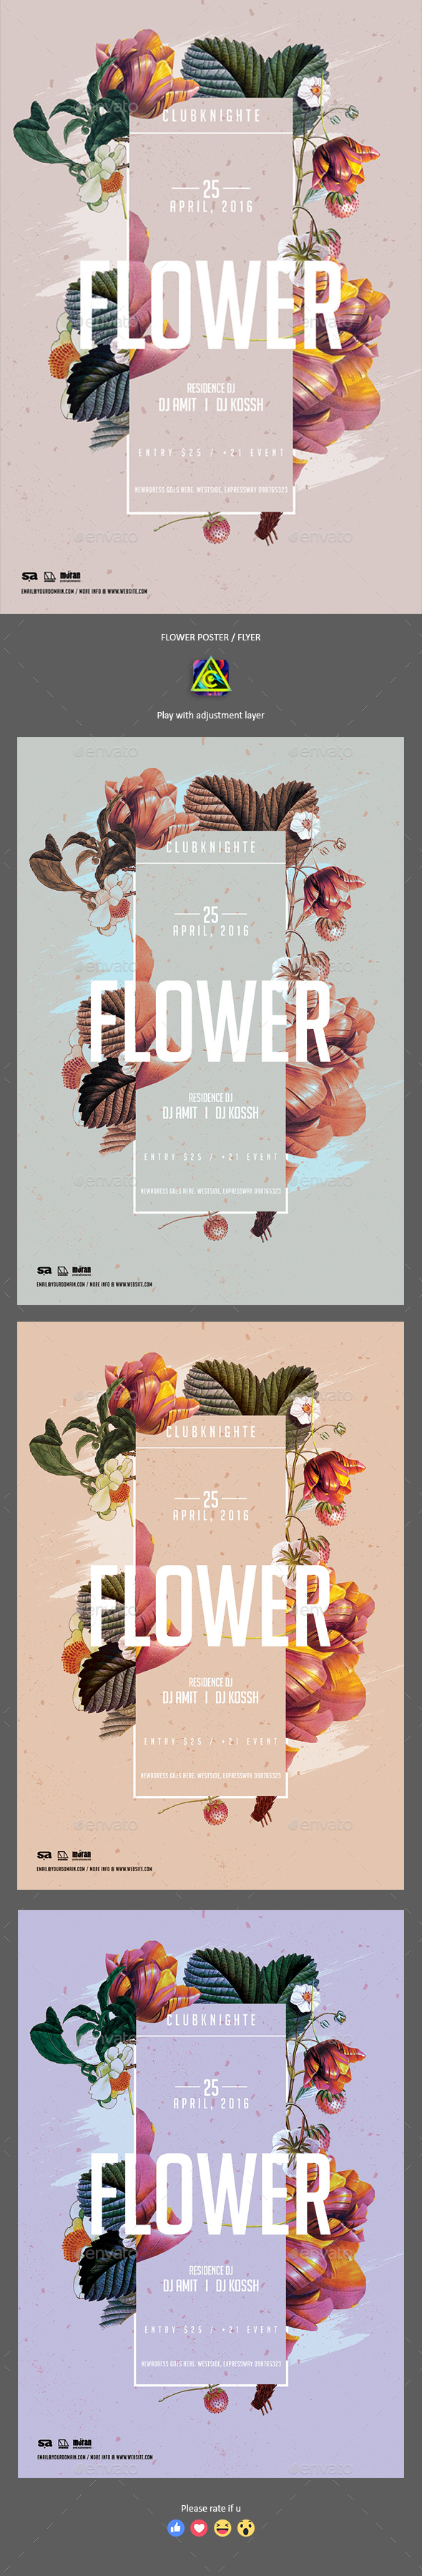 Flower Poster / Flyer